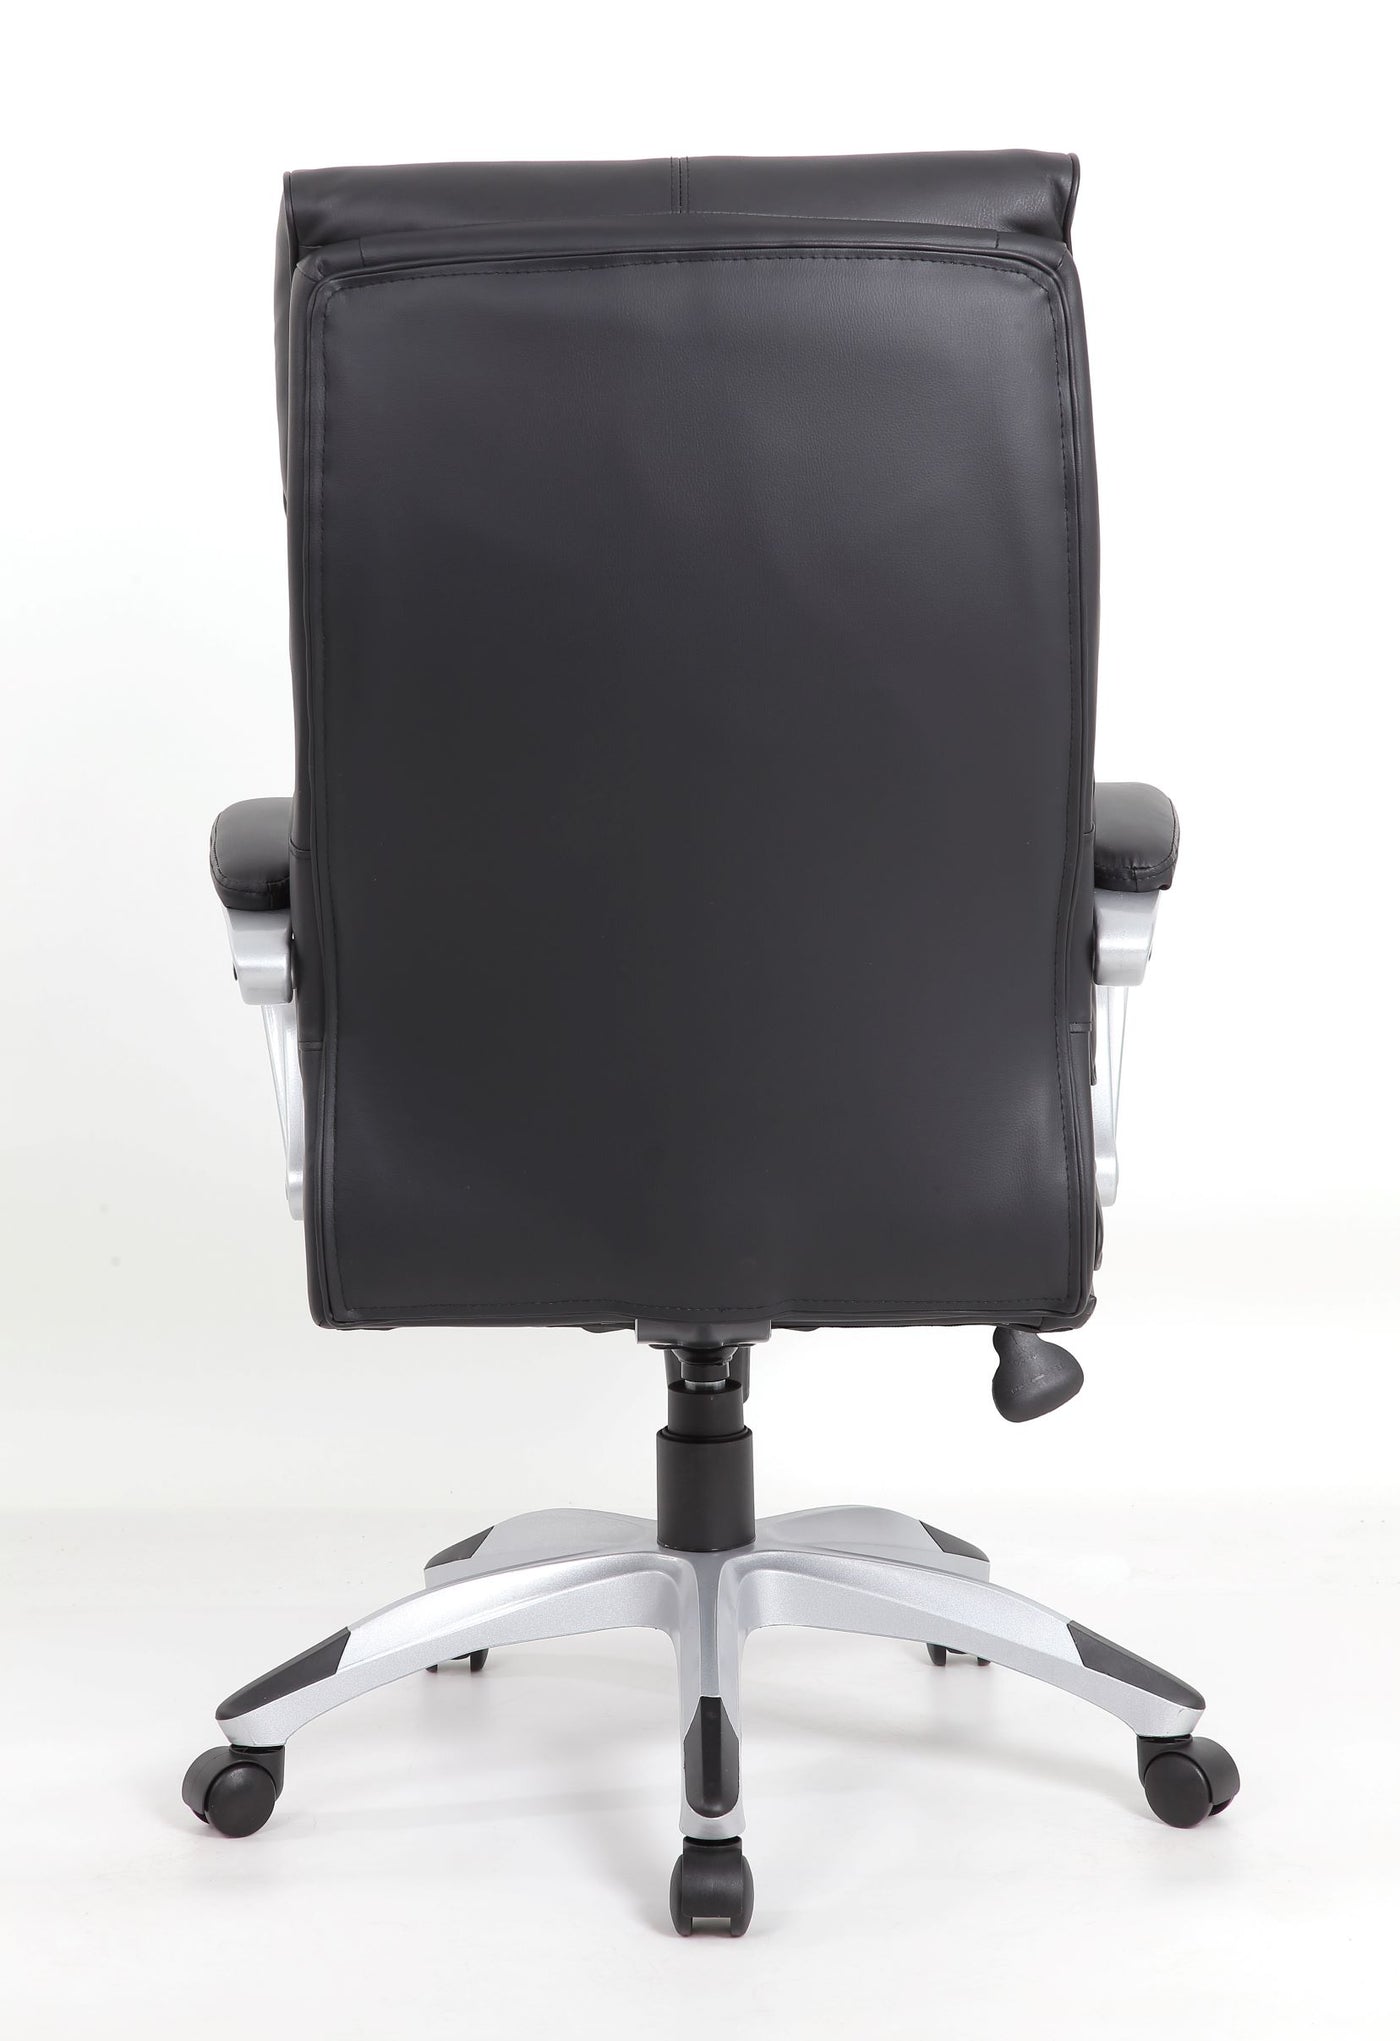 Callan Office Chair - Black